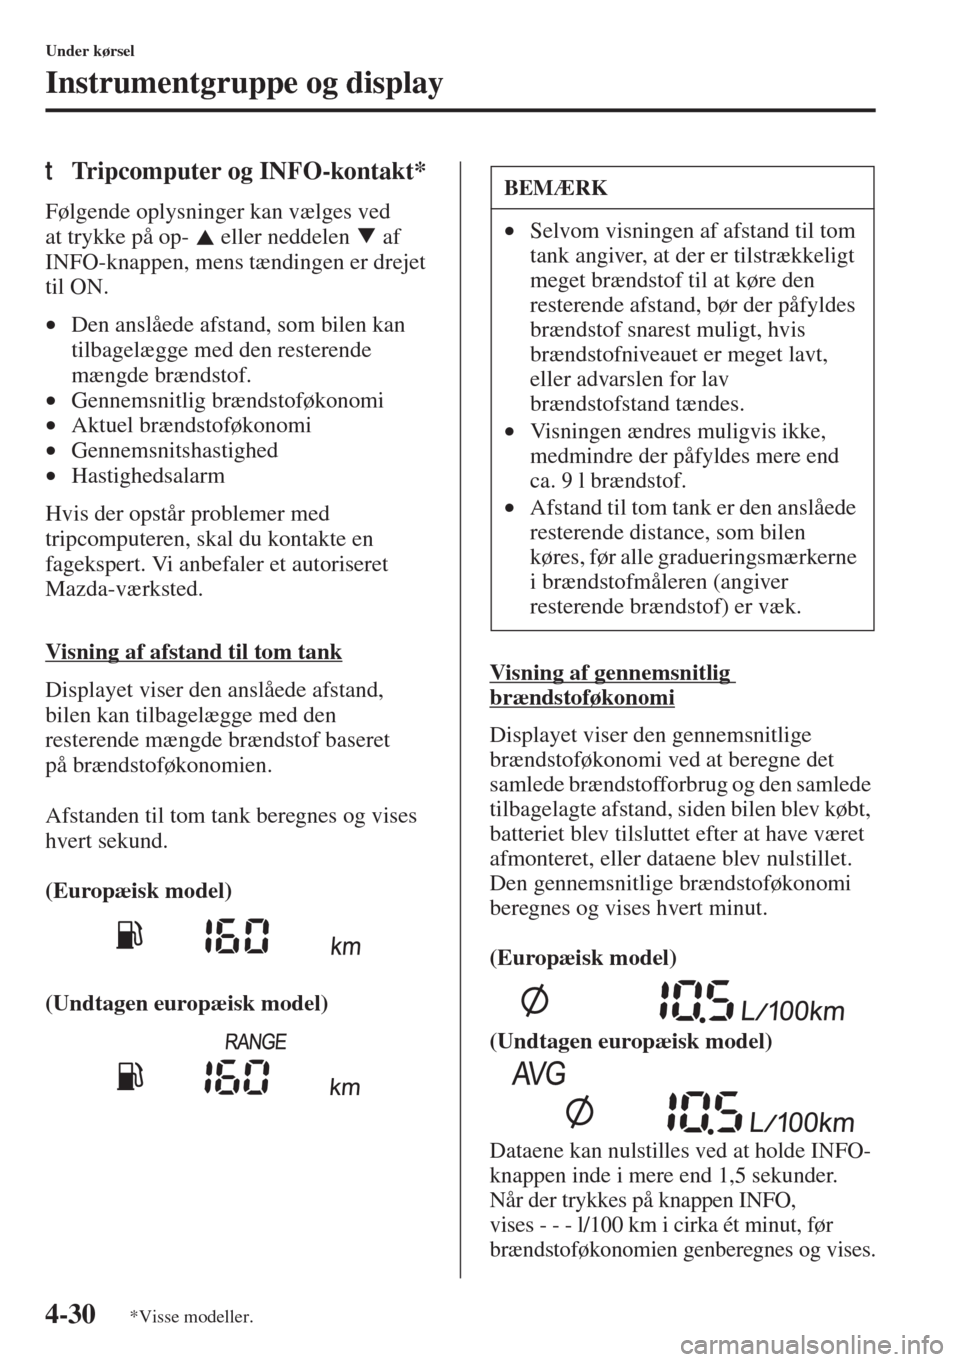 MAZDA MODEL 3 HATCHBACK 2015  Instruktionsbog (in Danish) 4-30
Under kørsel
Instrumentgruppe og display
tTripcomputer og INFO-kontakt*
Følgende oplysninger kan vælges ved 
at trykke på op-   eller neddelen   af 
INFO-knappen, mens tændingen er drejet 
t